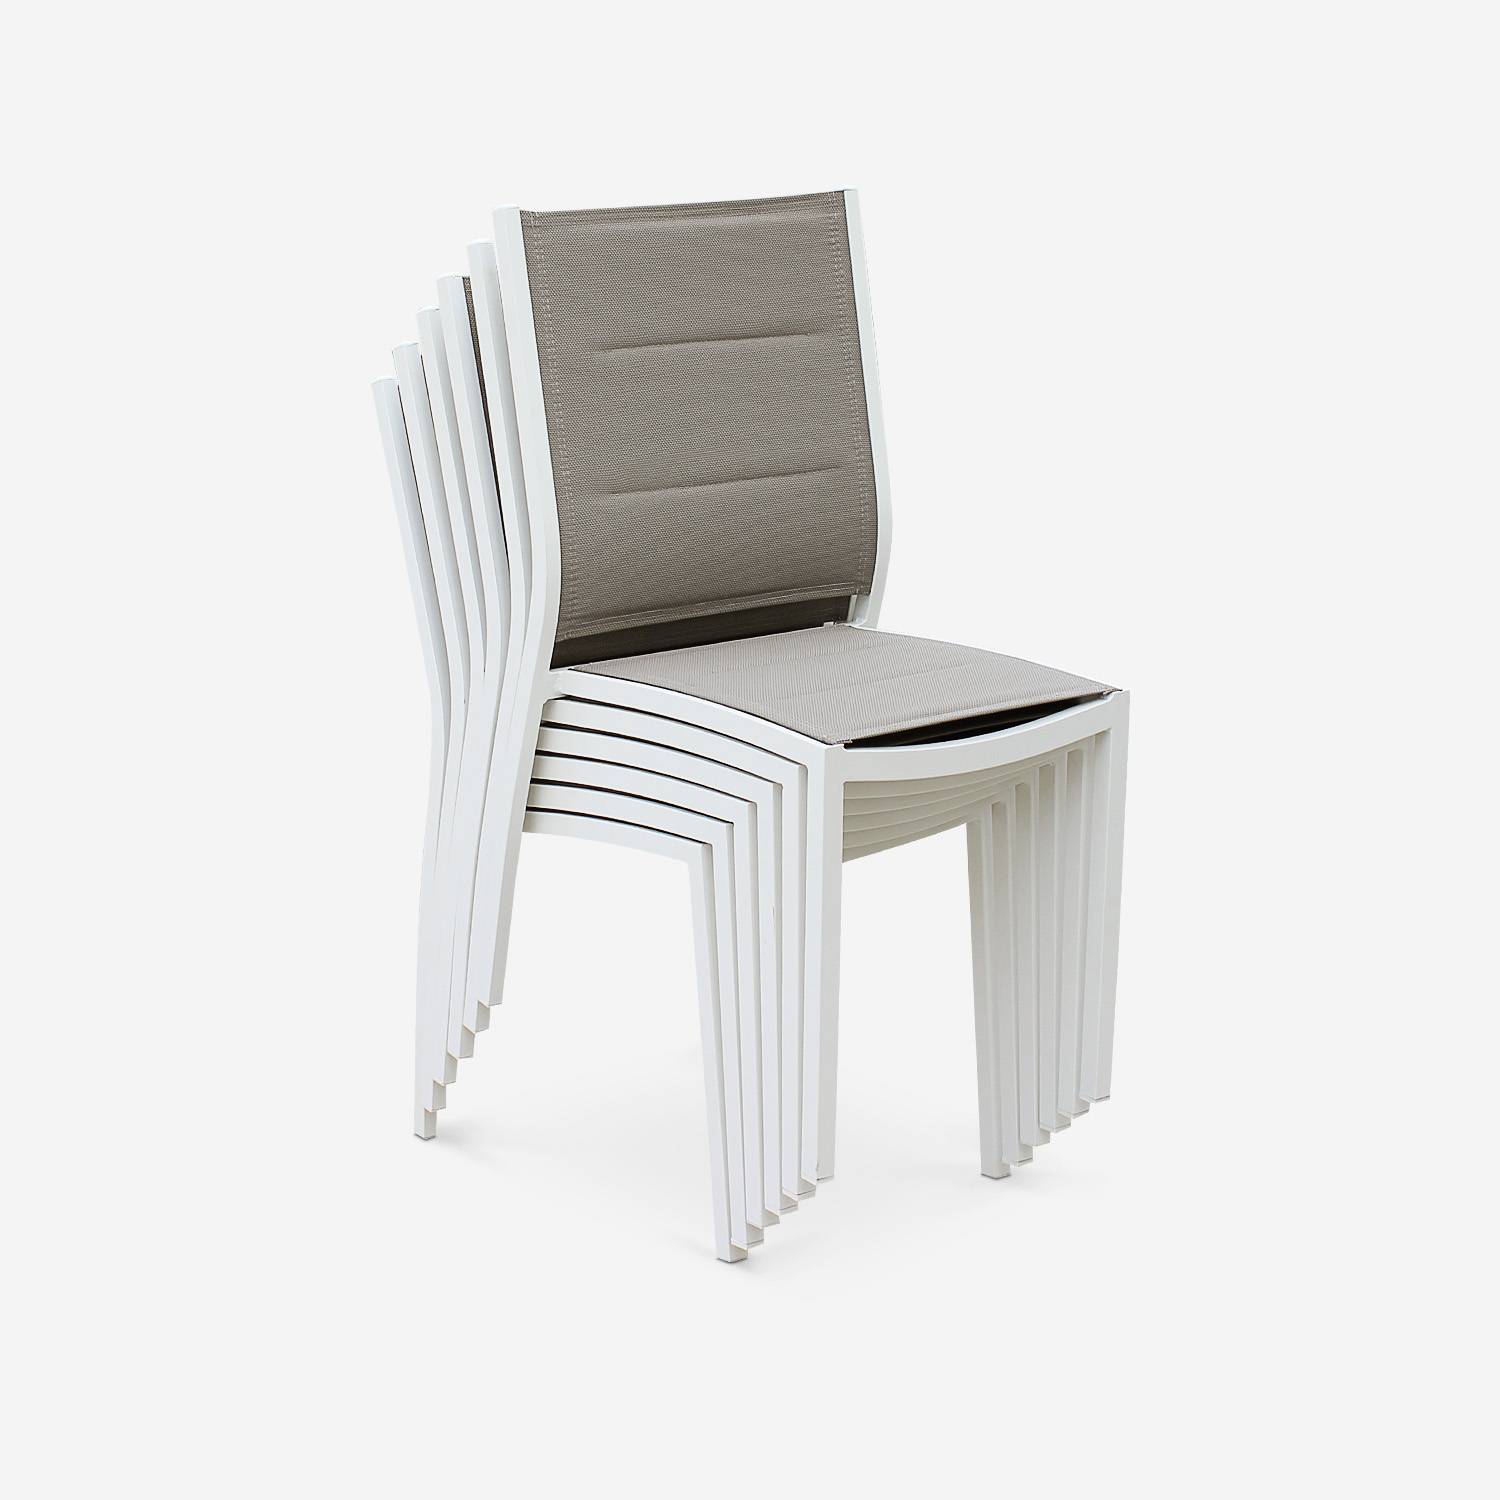 Coppia di sedie Chicago/Odenton in alluminio bianco e textilene colore marrone talpa Photo2